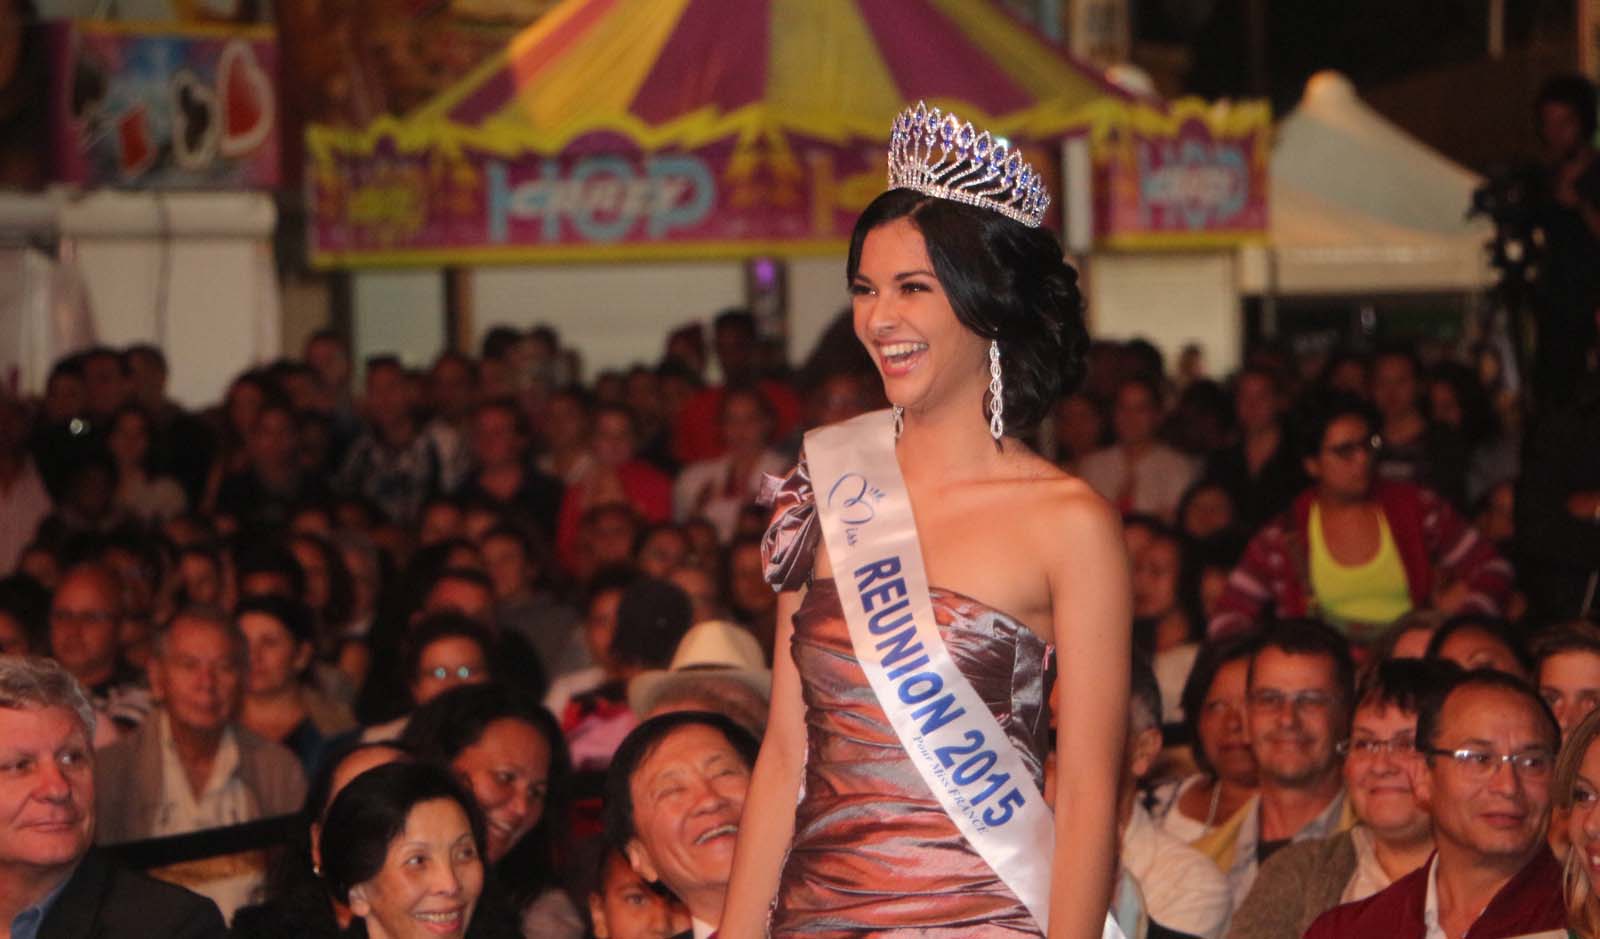 Une Miss Réunion manifestement heureuse d'assister à cette élection